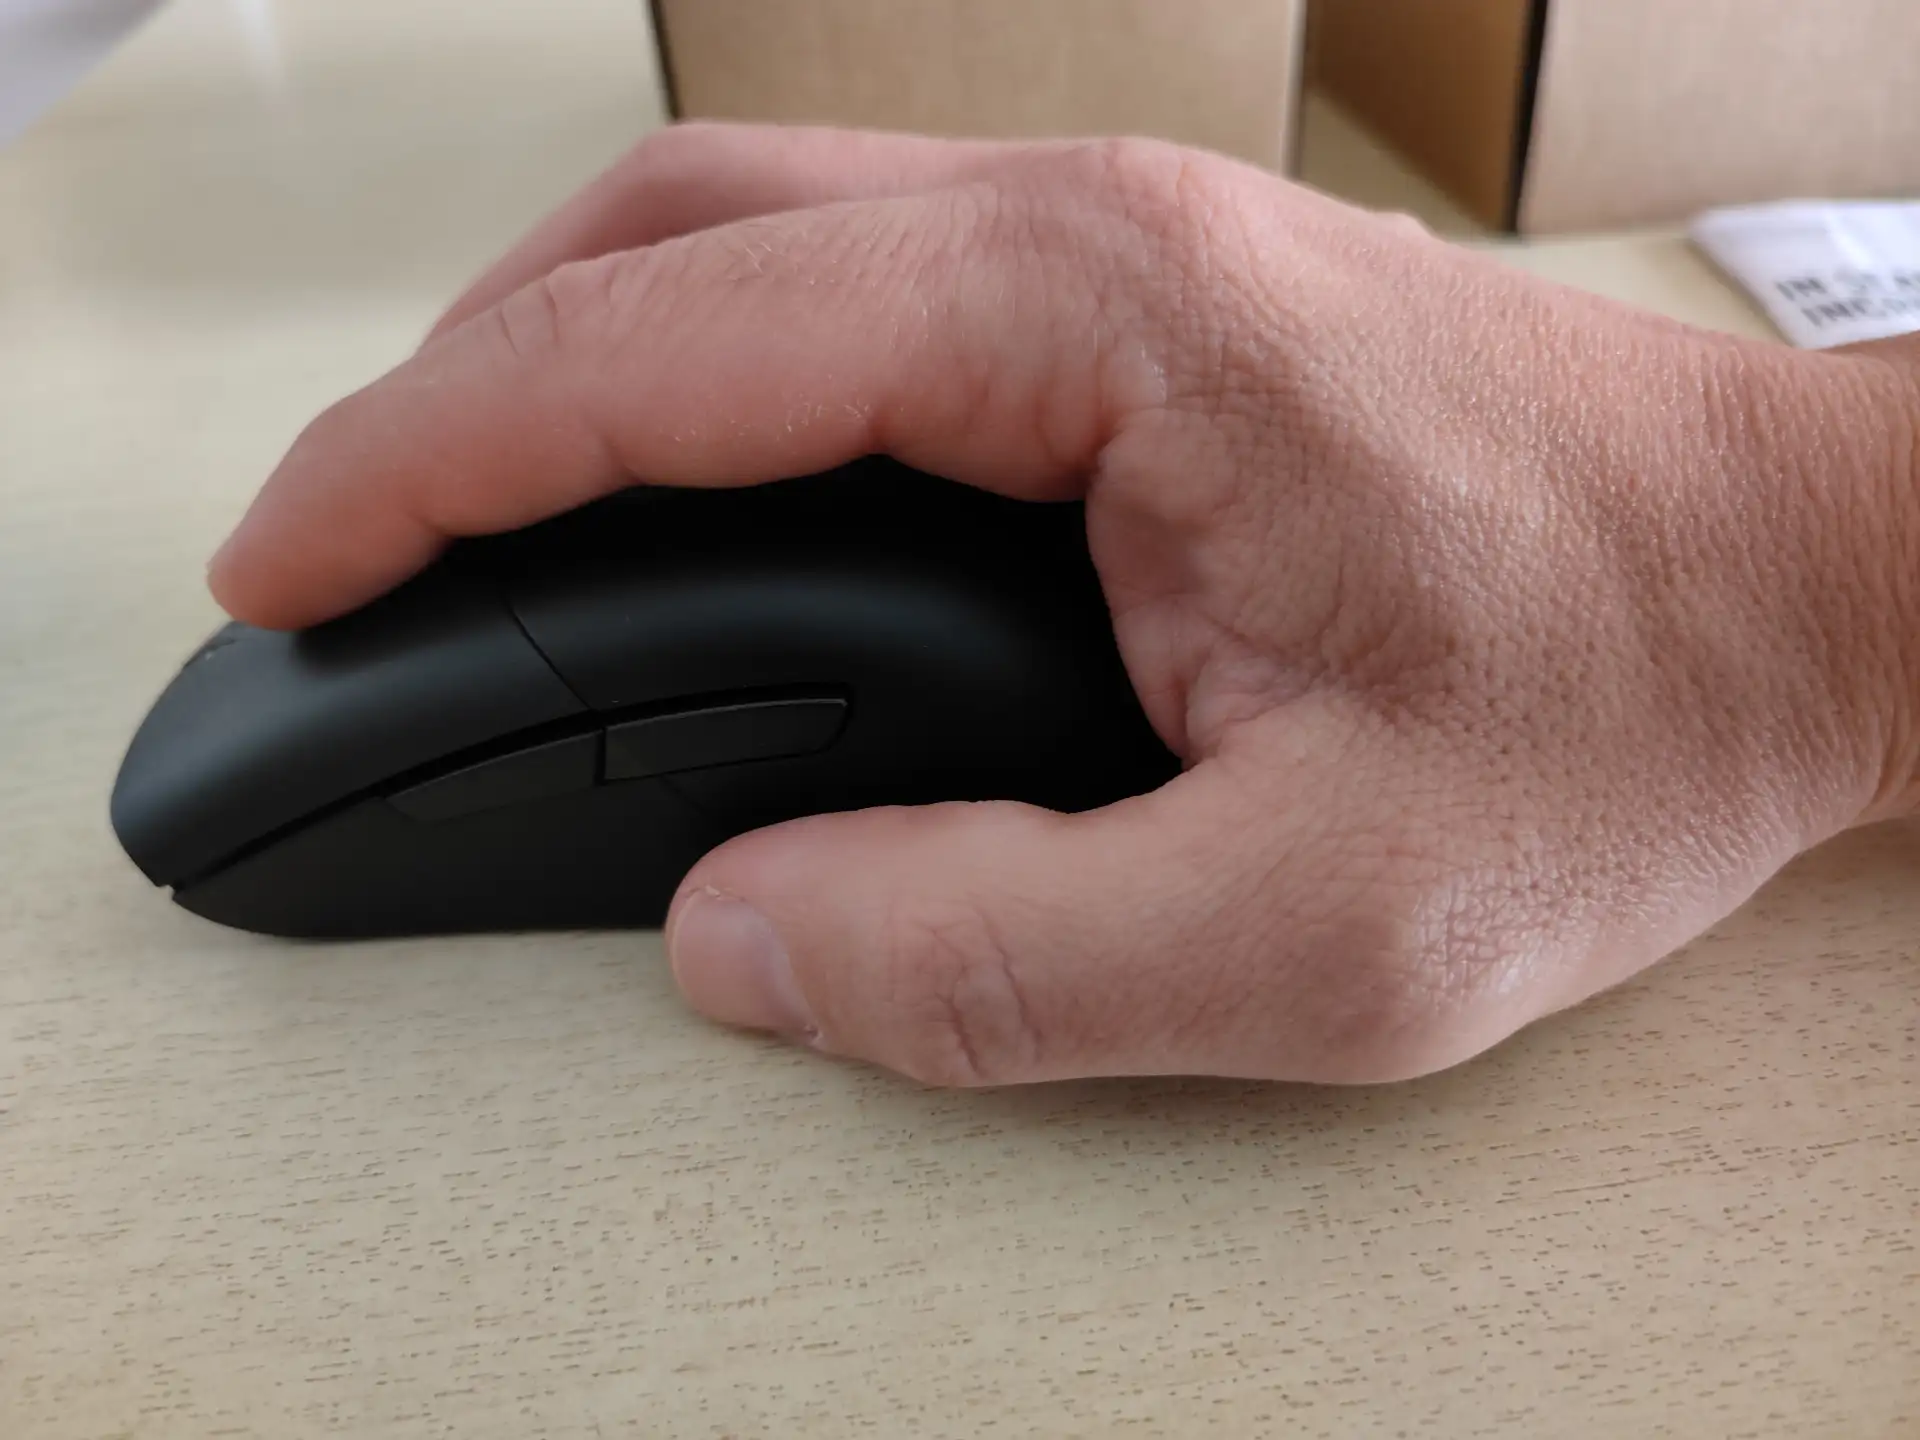 ROG Keris Wireless AimPoint recensione - gaming mouse leggero e ad altissime prestazioni